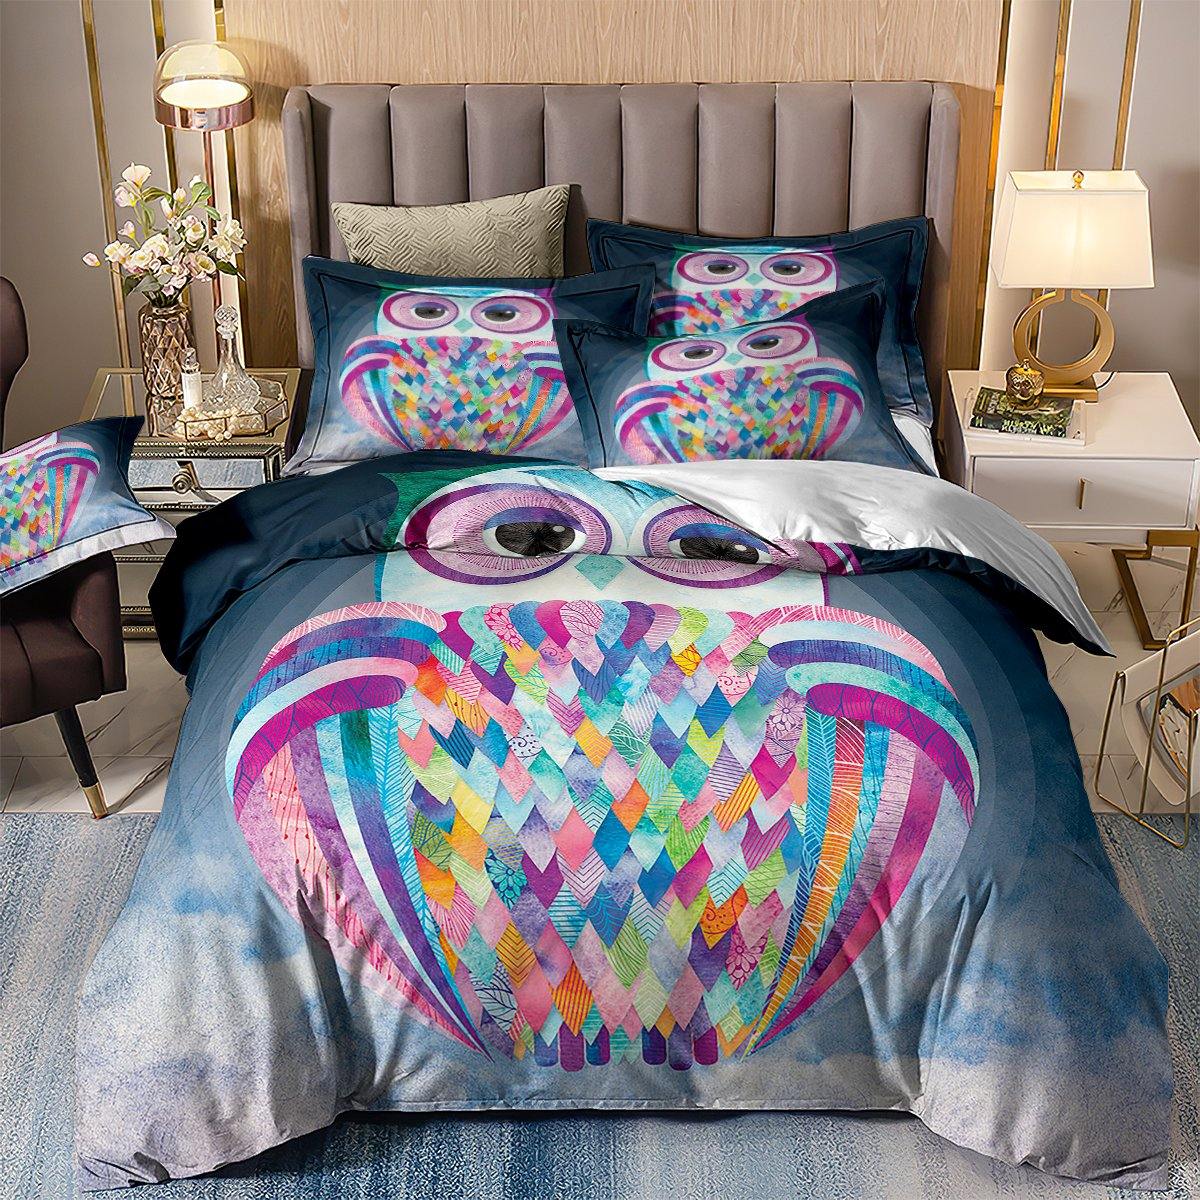 WONGS BEDDING Big eyed owl Bedding Bedroom Home Kit - Wongs bedding